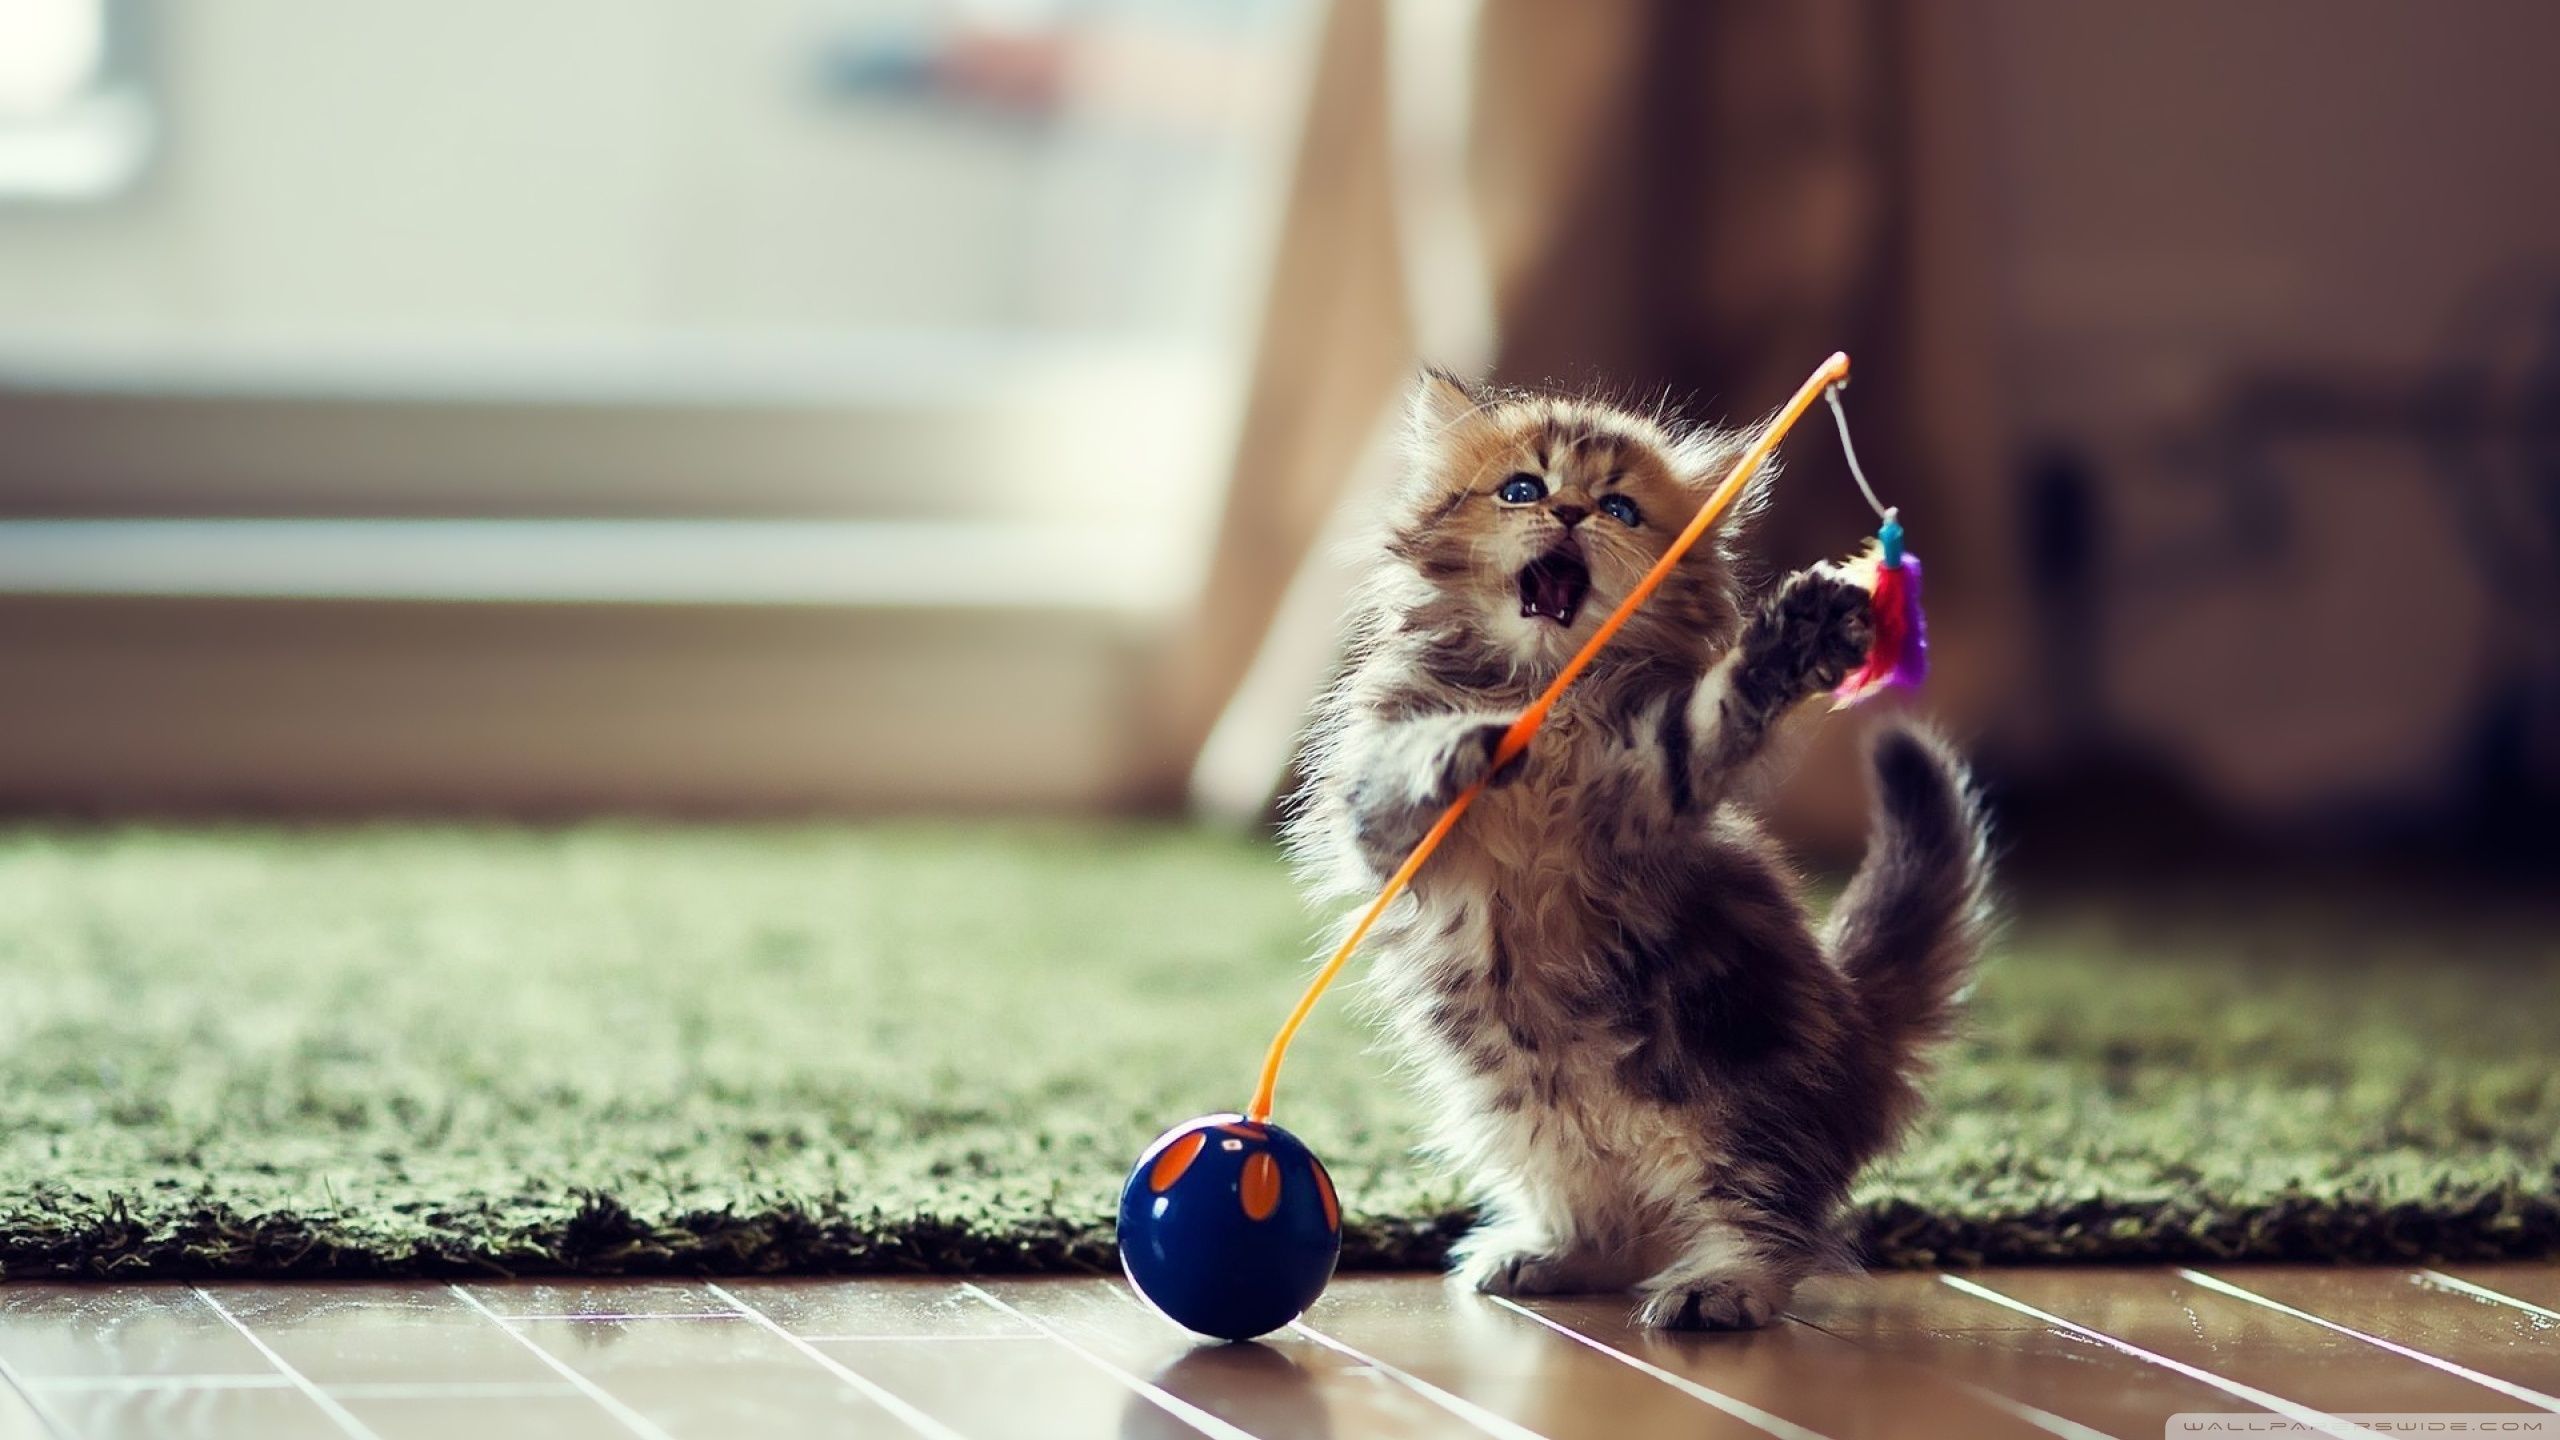 Lovely Playful Kitten Ultra HD Desktop Background Wallpaper for 4K